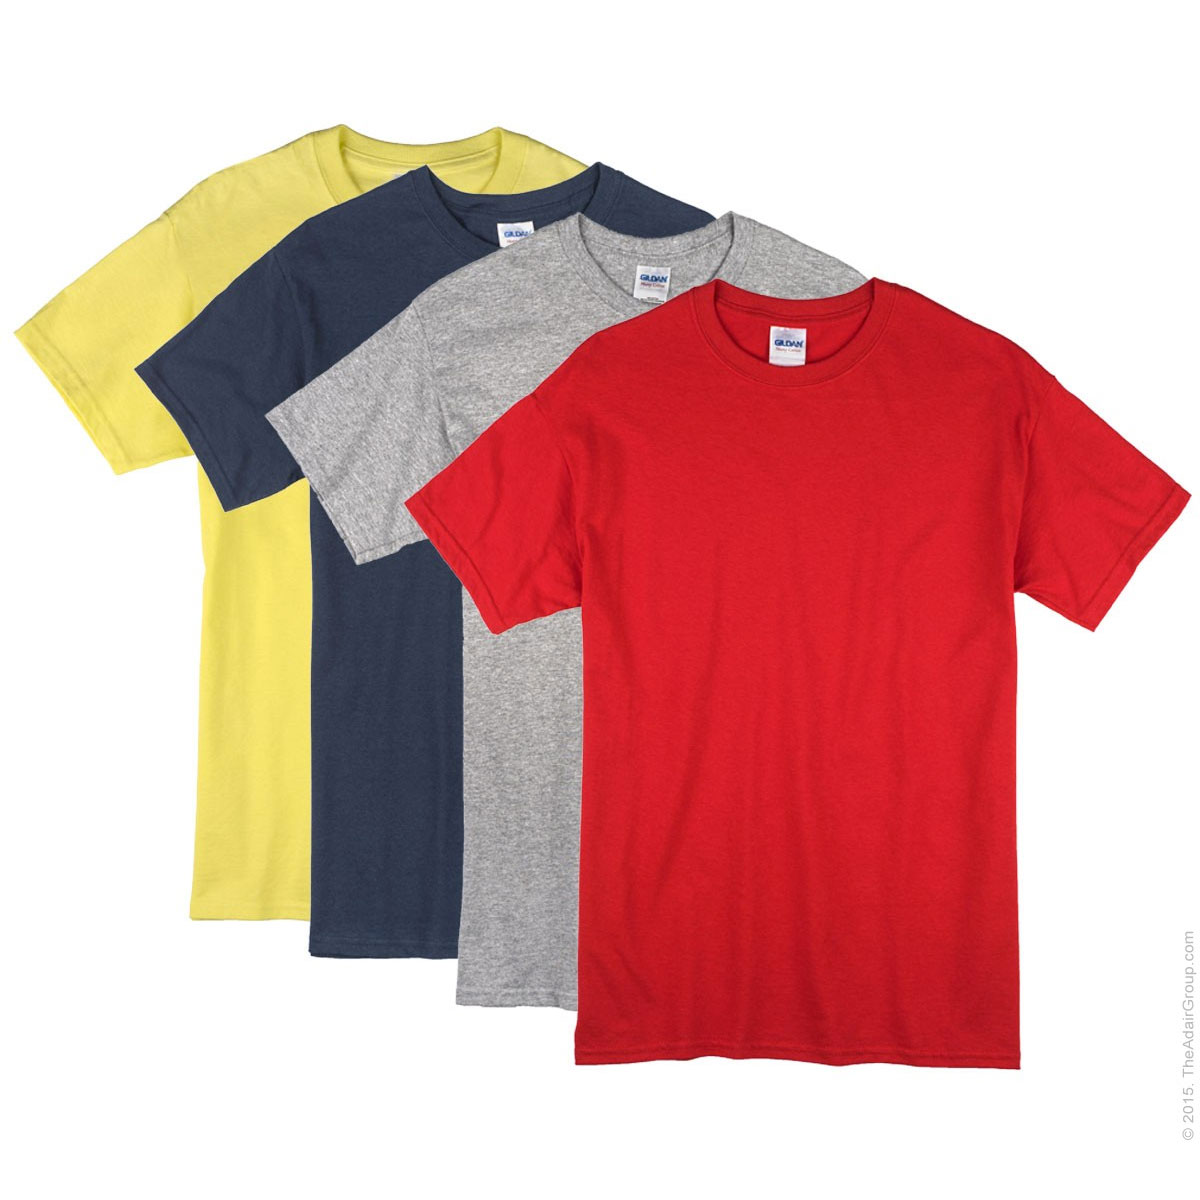 Купить базовые футболки хорошего качества. Gildan Premium Cotton футболка. Цветные футболки. Футболка однотонная. Хлопчатобумажная футболка.